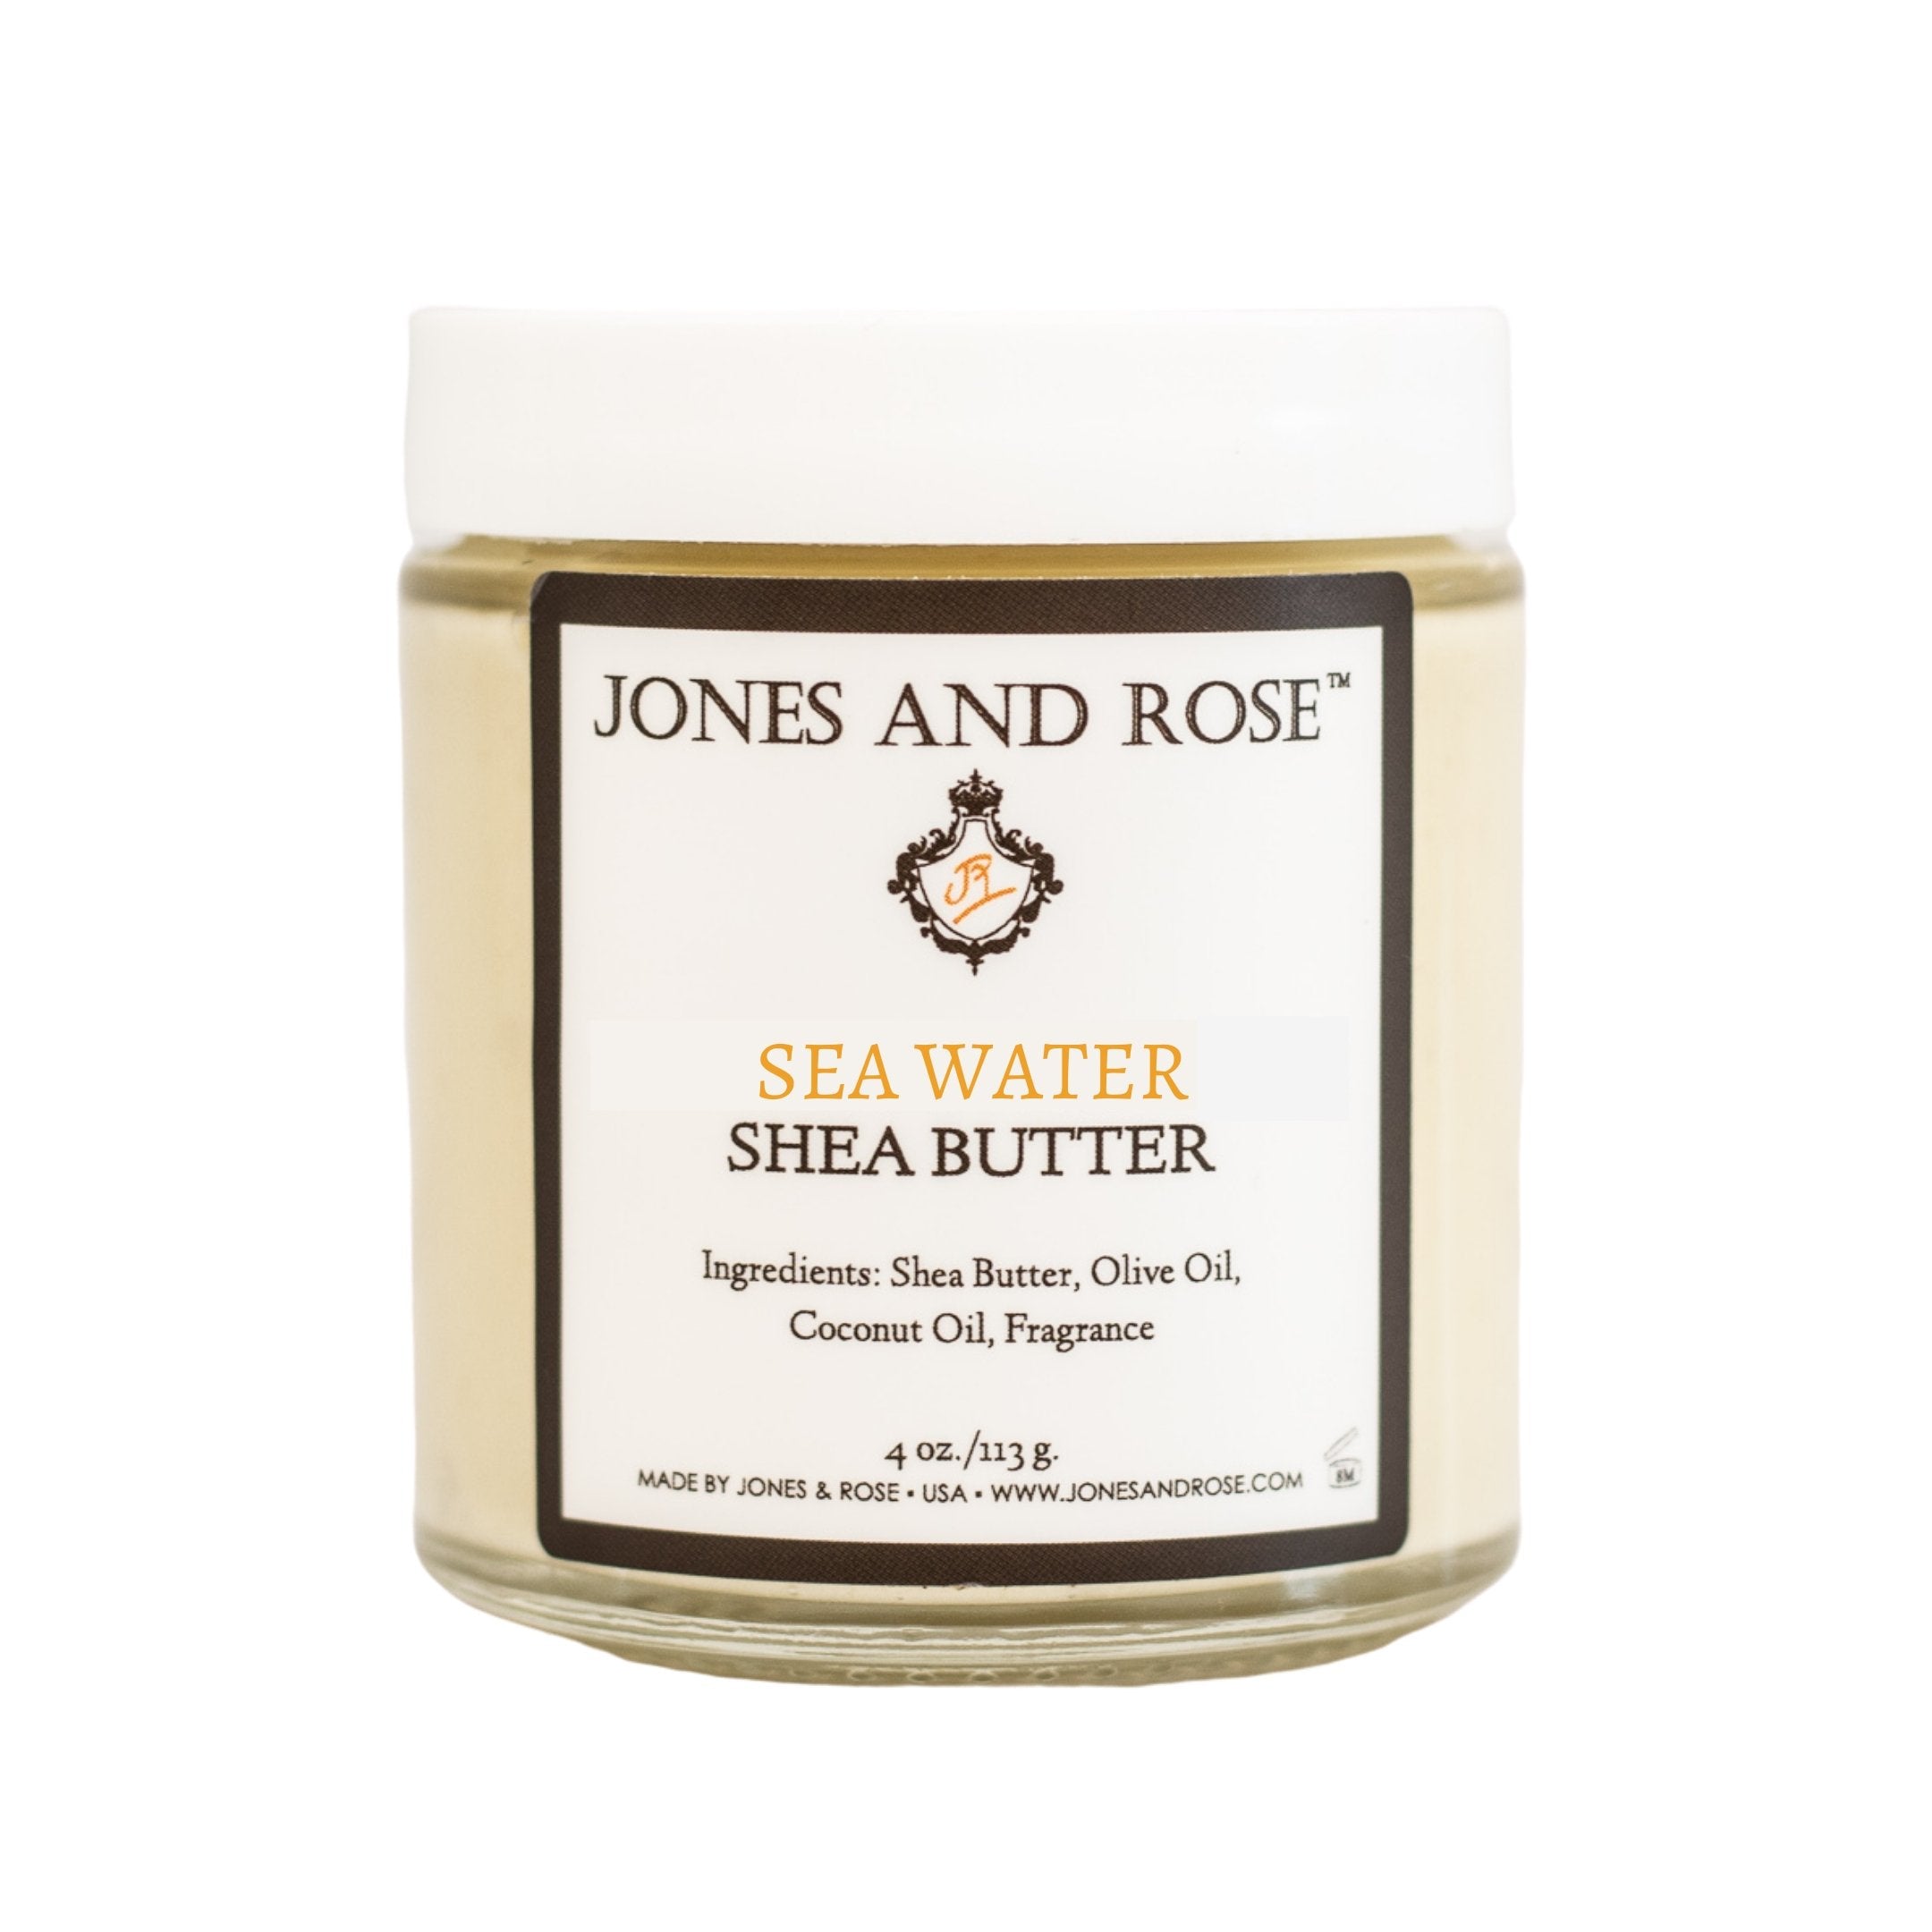 Sea Water Shea Butter